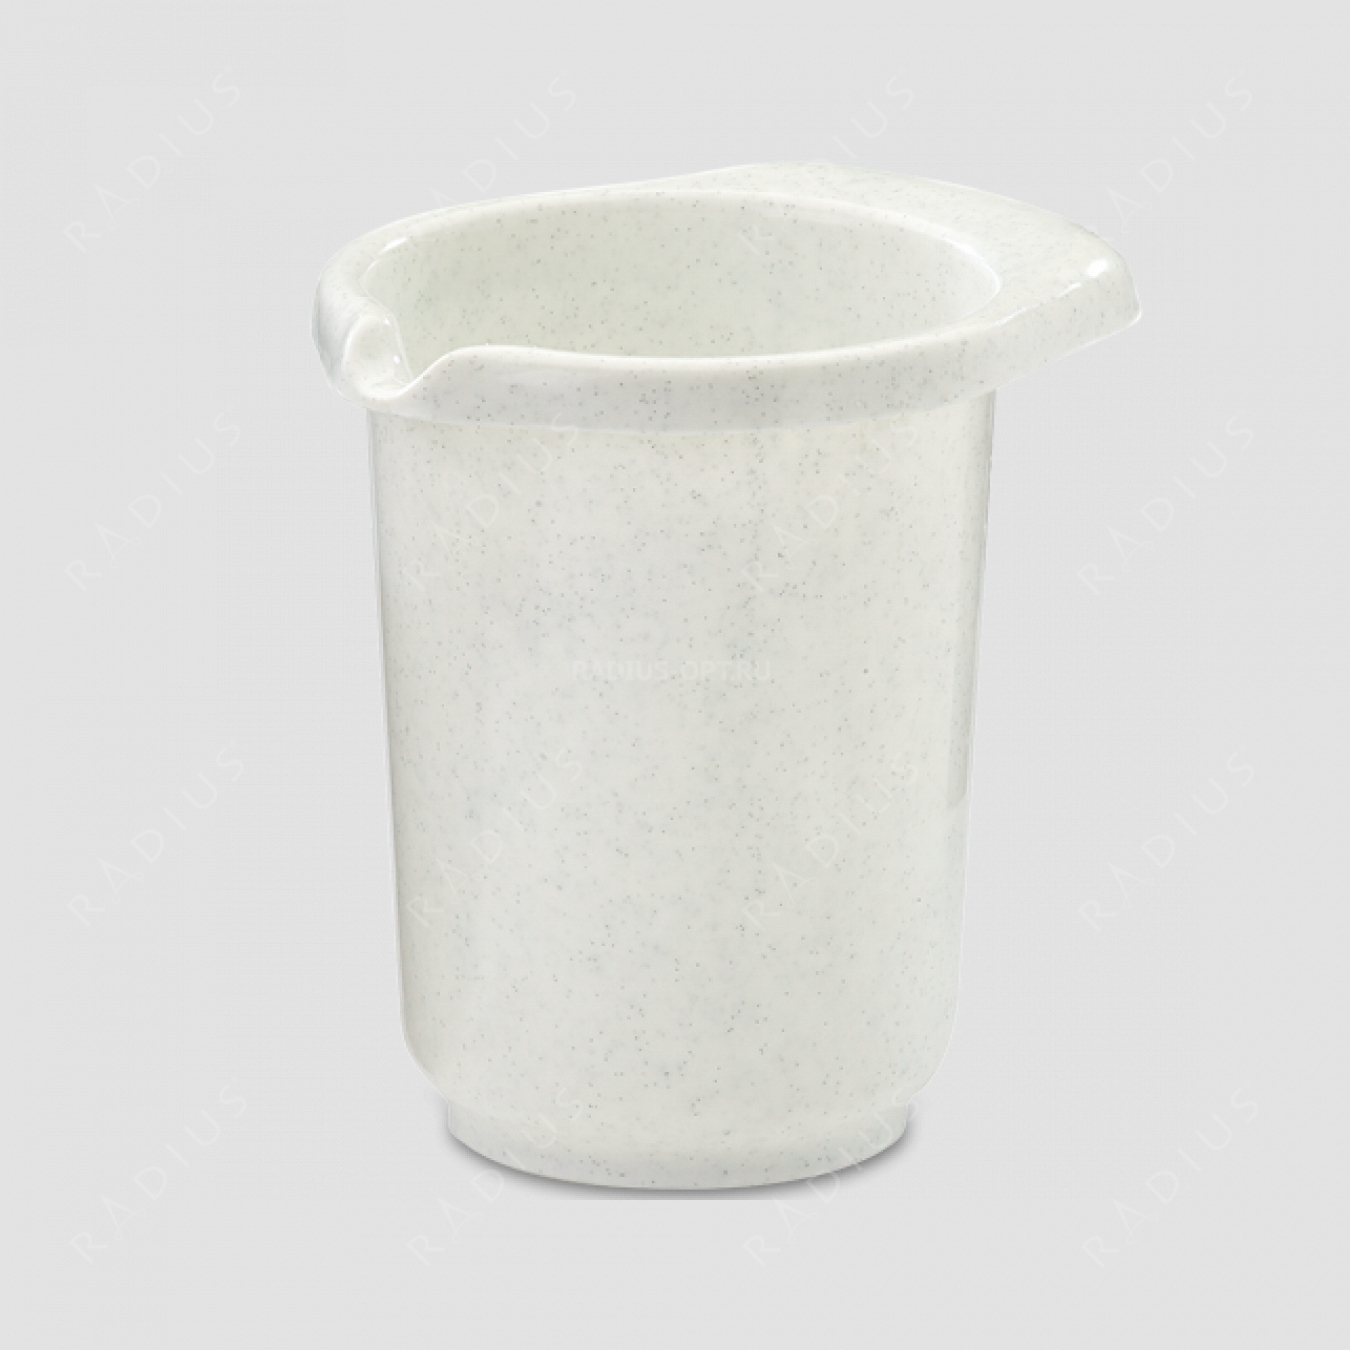 Чаша пластиковая 1 л, нескользящее дно, без упаковки, серия Baking, WESTMARK, Германия